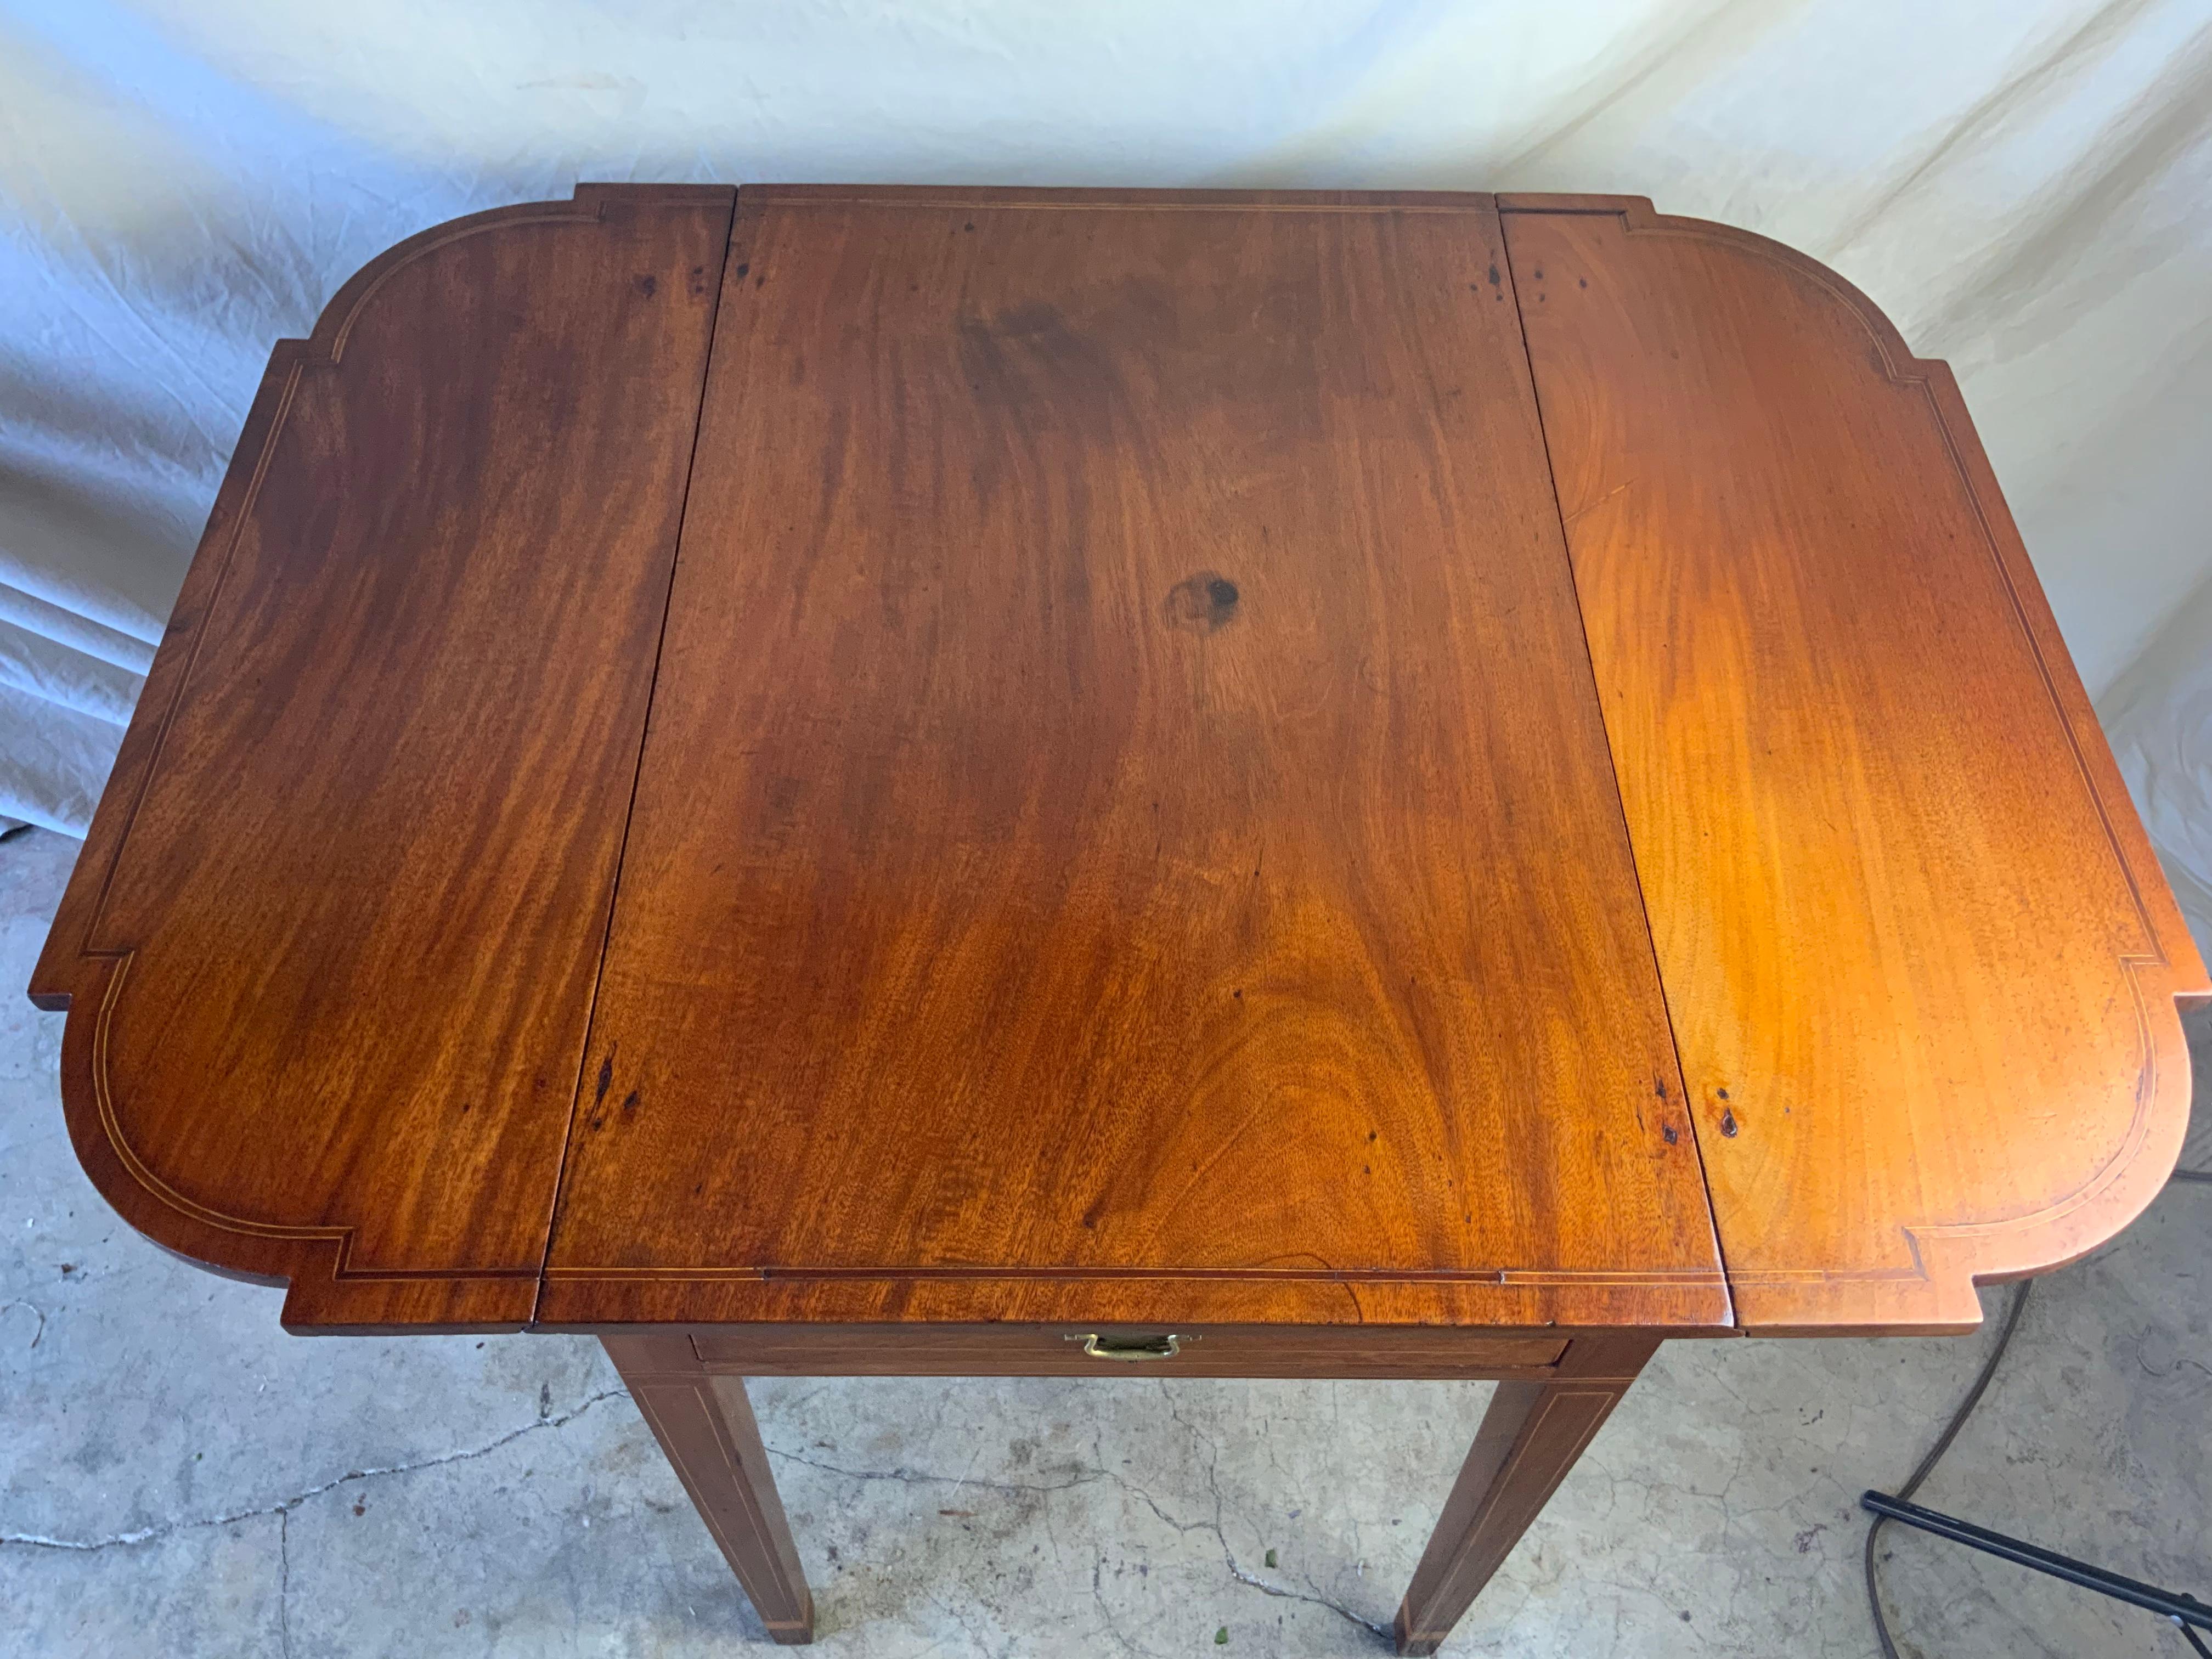 Ein sehr schöner Pembroke-Tisch mit Mahagoni-Intarsien und abgeschnittenen Ecken an den Fallblättern. Tolle Farbe und Patina auf der alten Oberfläche. Die Griffe an der aktiven und festen Schubladenfront sind ein späterer Ersatz. Alle Scharniere